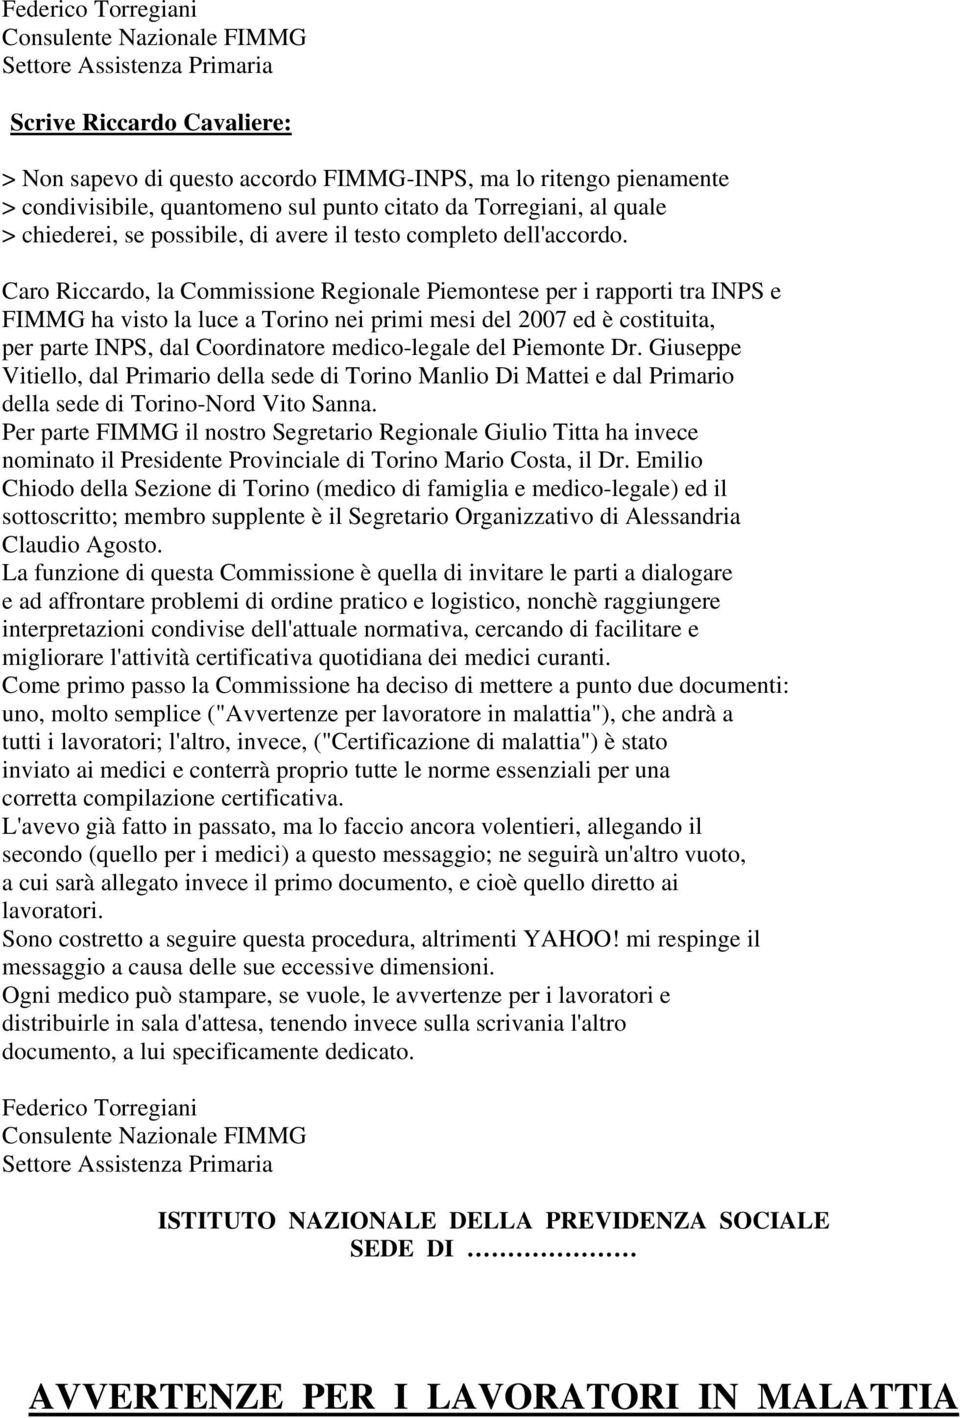 Caro Riccardo, la Commissione Regionale Piemontese per i rapporti tra INPS e FIMMG ha visto la luce a Torino nei primi mesi del 2007 ed è costituita, per parte INPS, dal Coordinatore medico-legale